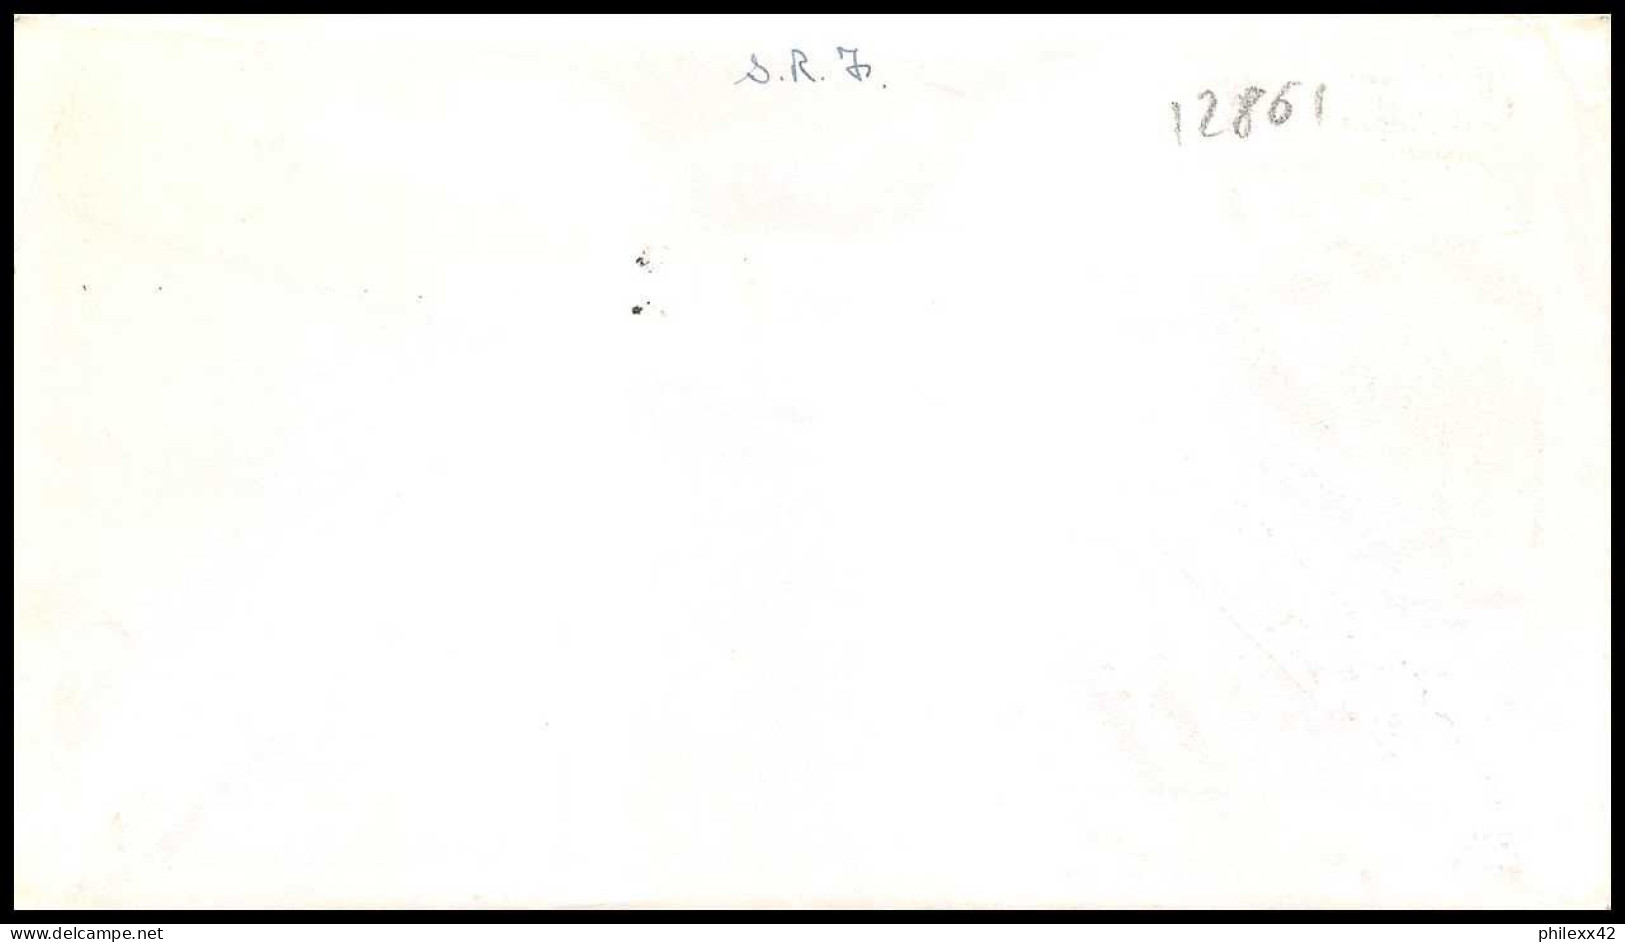 12861 Fdc Premier Jour 1954 San Francisco Regular Issue Usa états Unis Lettre Cover - Lettres & Documents